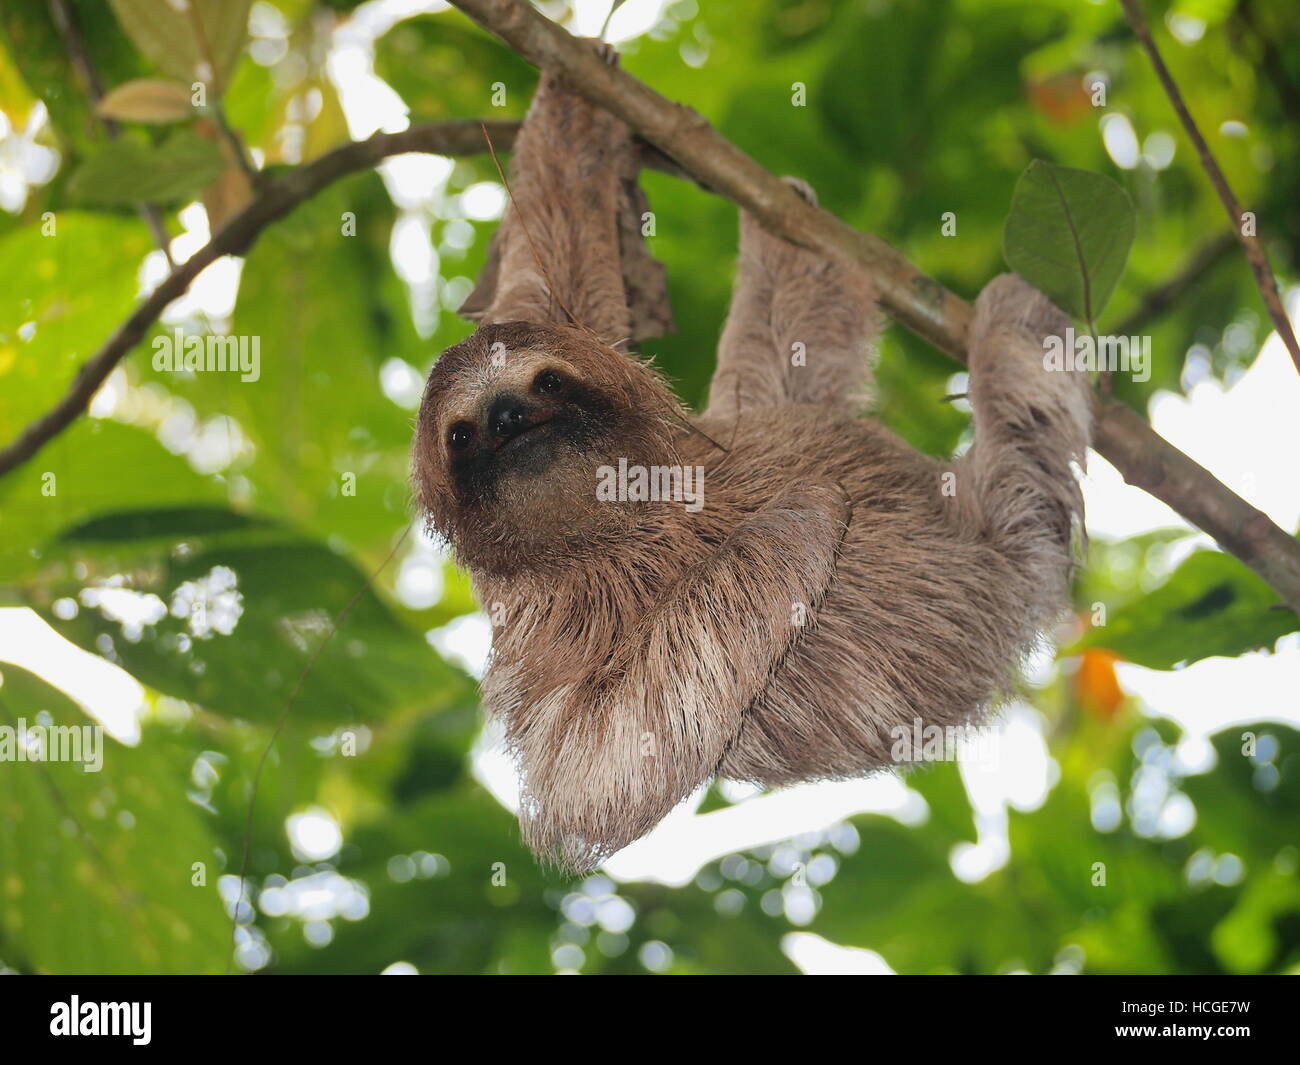 Carino bradipo, Bradypus variegatus, appeso ad un ramo nella foresta, animale selvatico, Panama America Centrale Foto Stock